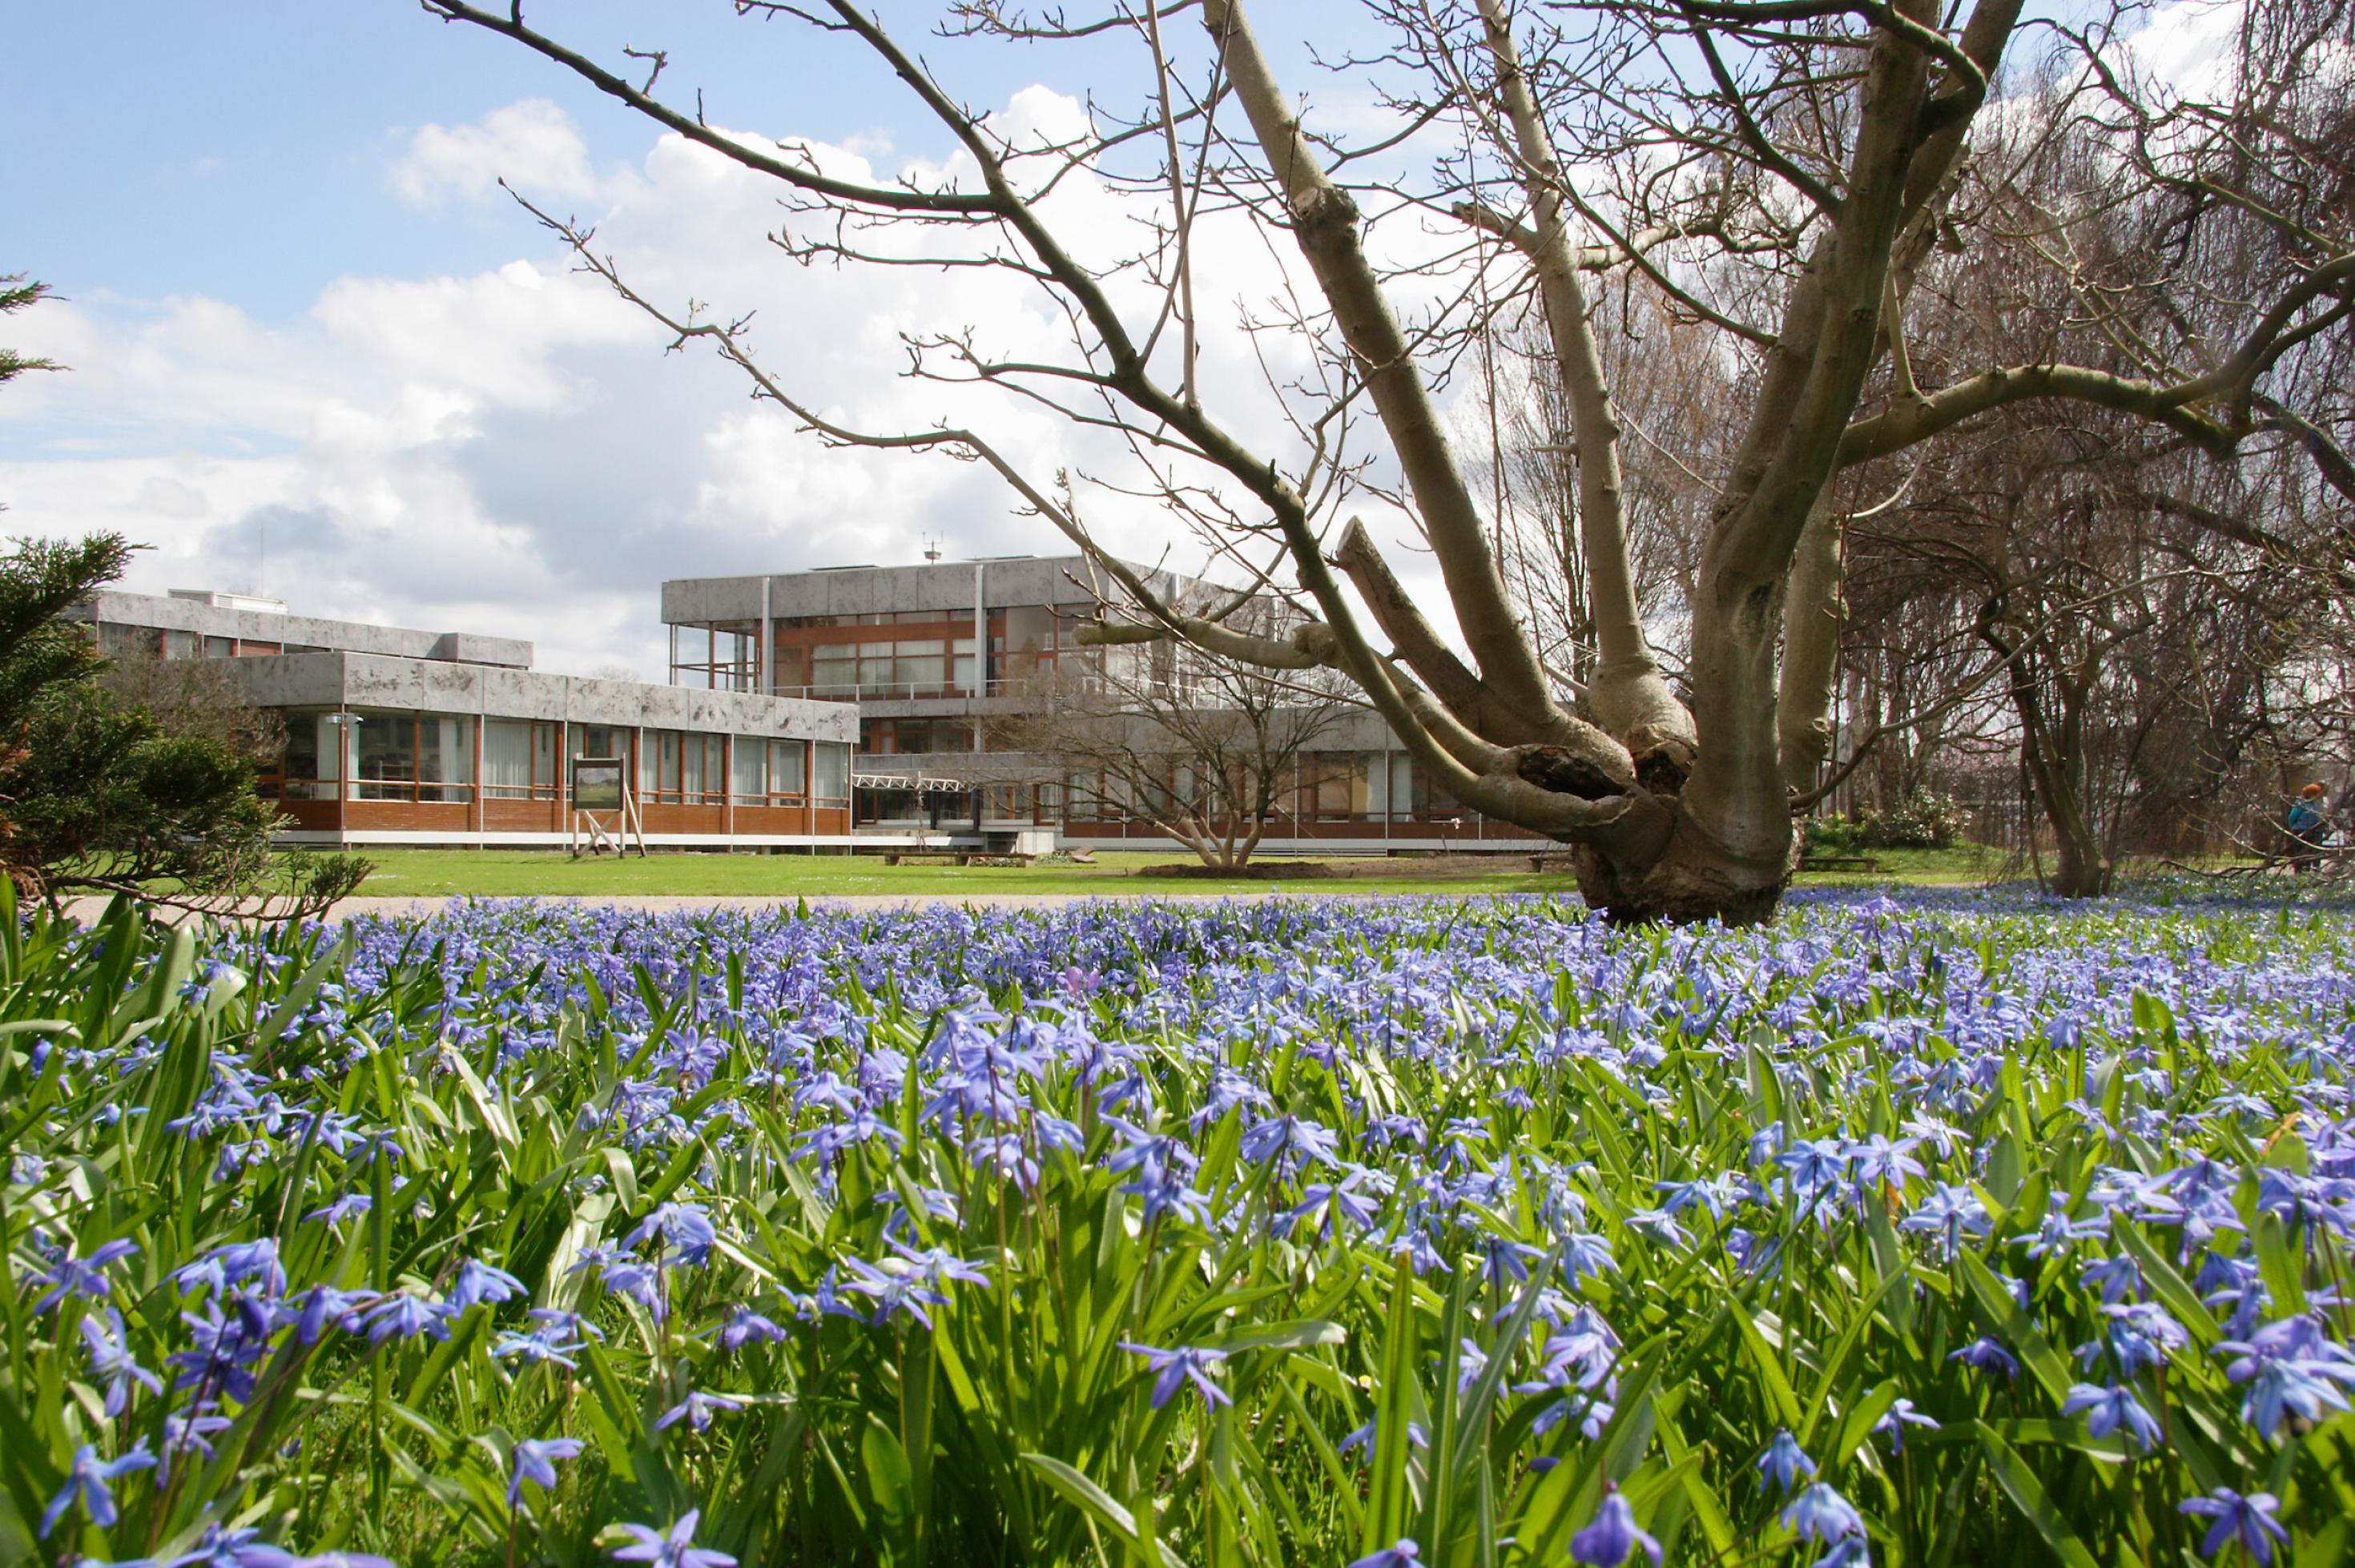 Das Gebäude des Gerichts hinter blühenden Blaustern-Pflanzen in Frühlingsstimmung.